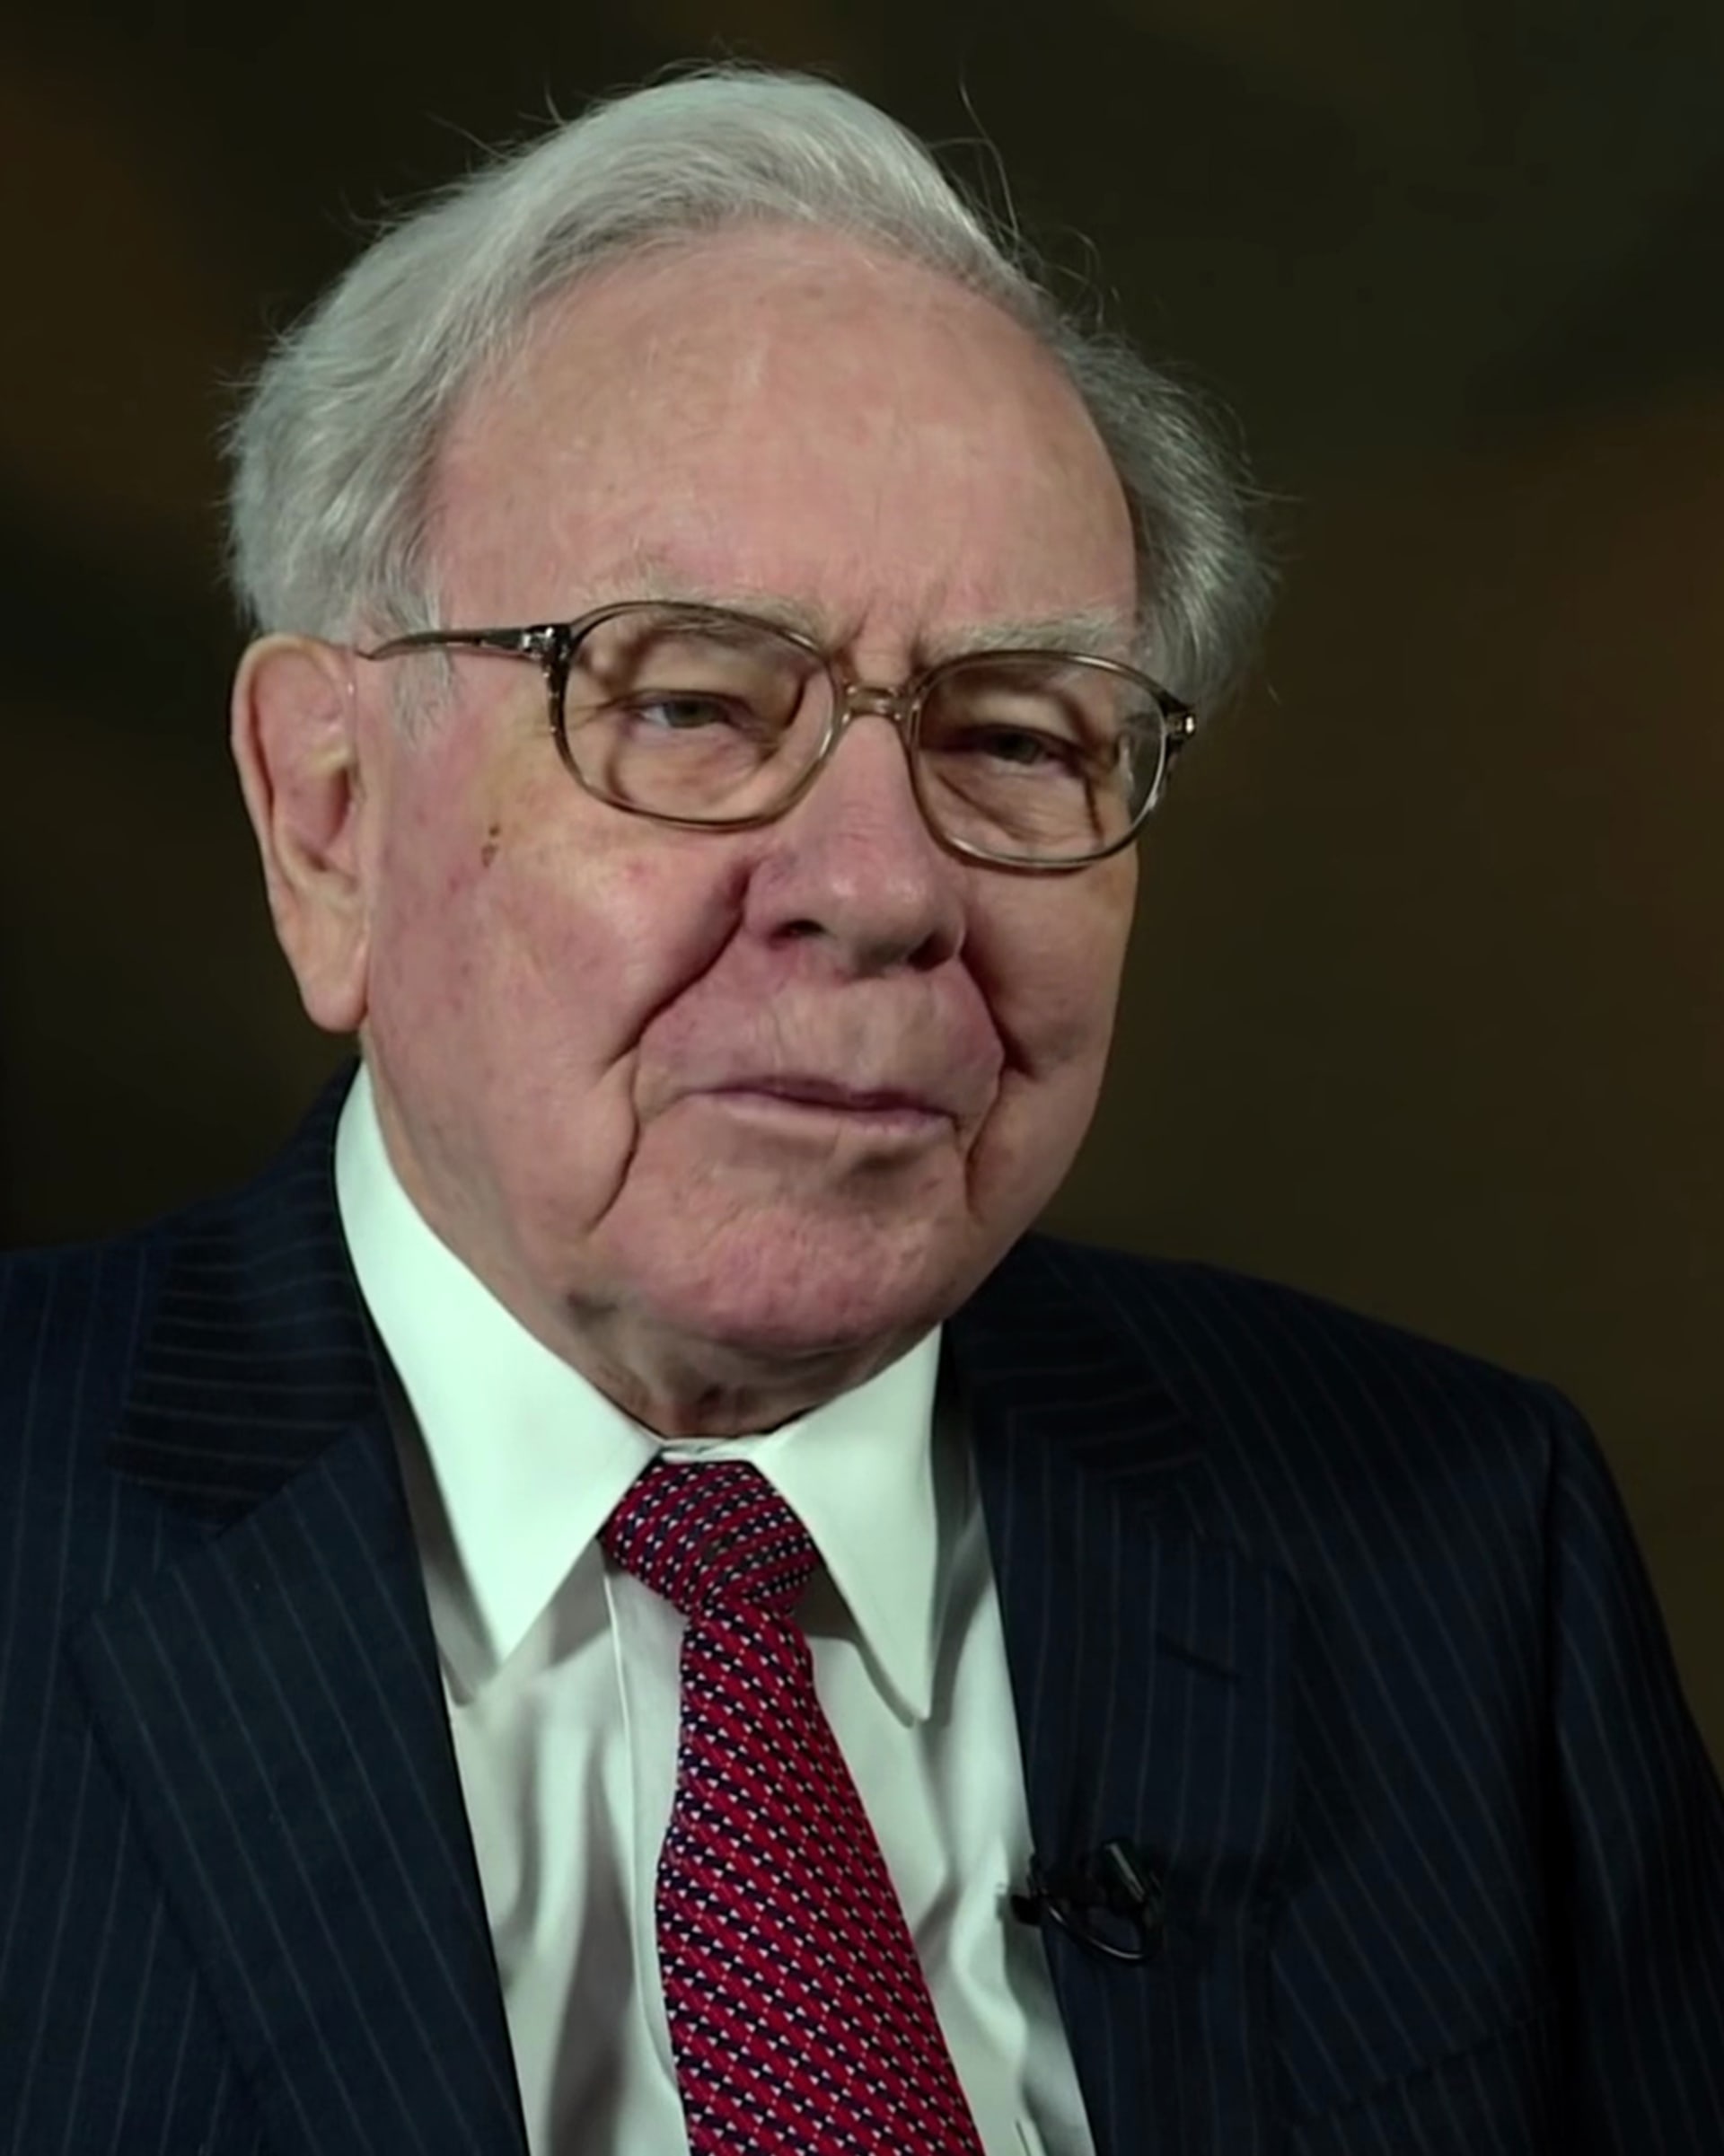 Jedním z velkých světových hráčů, kteří nepanikaří a dokážou i na krizi vydělat, je Warren Buffett. Tento téměř jedenadevadesátiletý americký miliardář, investor a filantrop  se vloni ke všeobecnému překvapení obrátil ke zlatu.